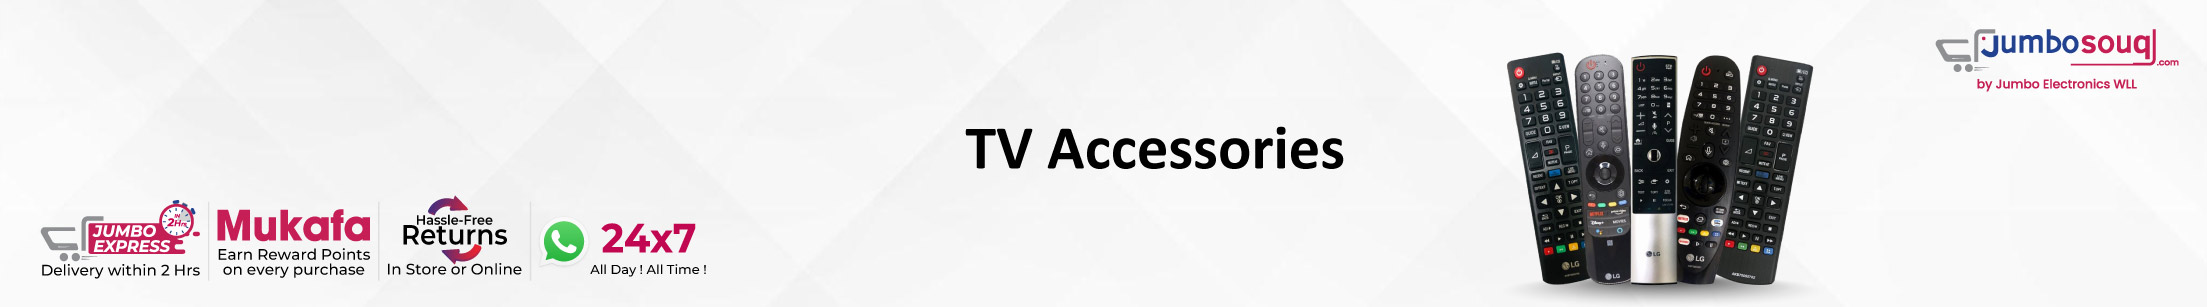 TV Accessories